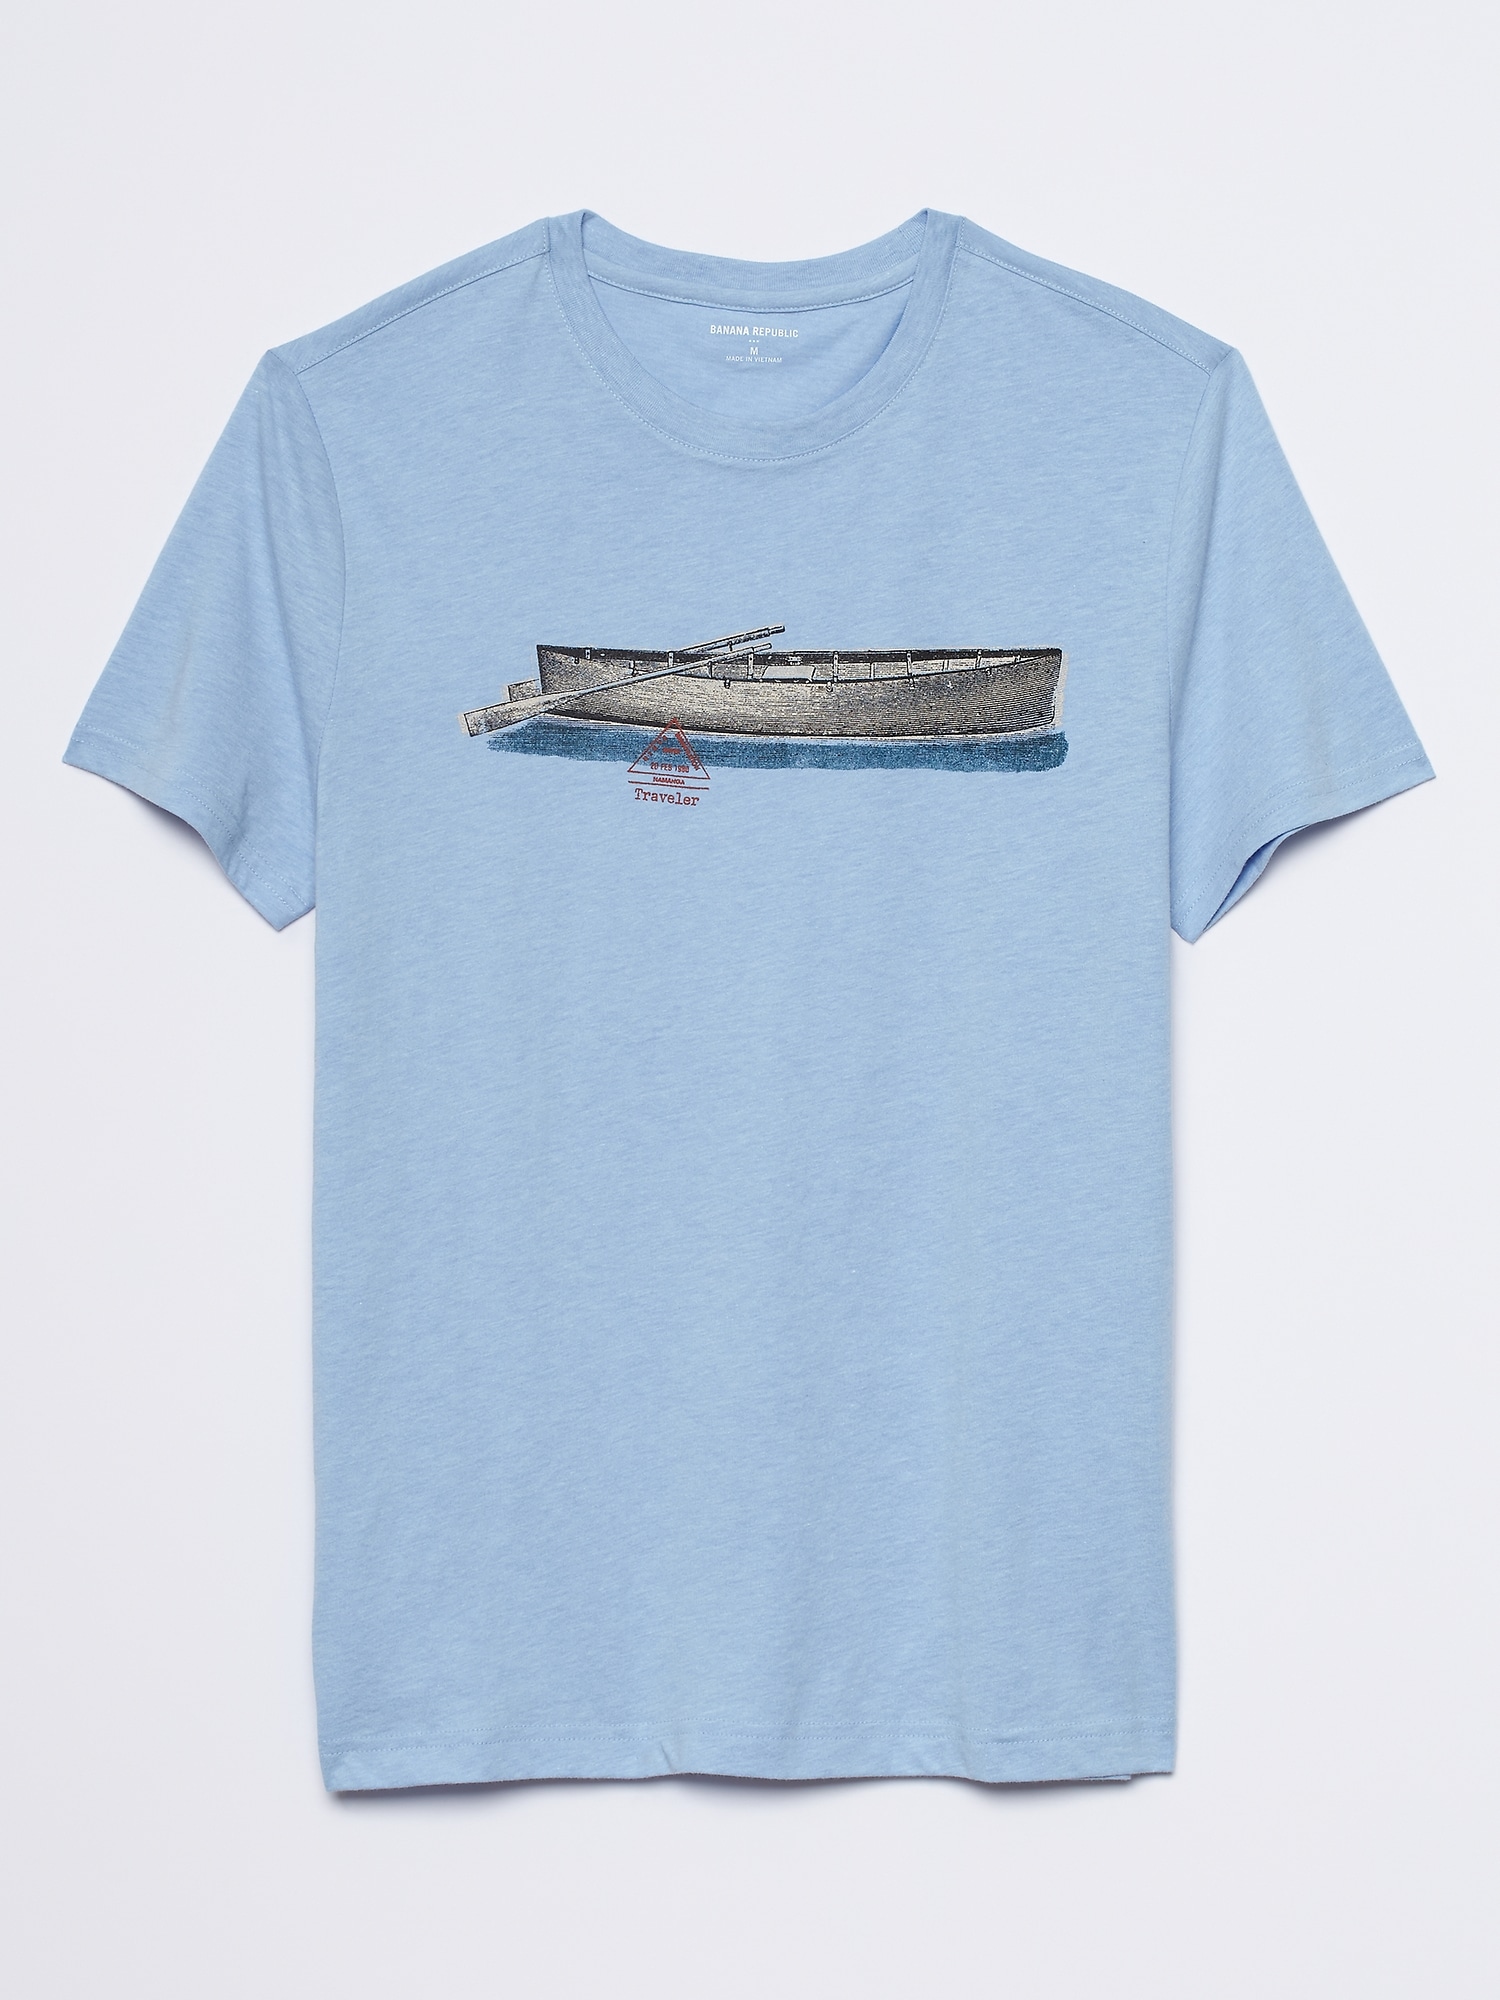 Canoe Graphic T-Shirt